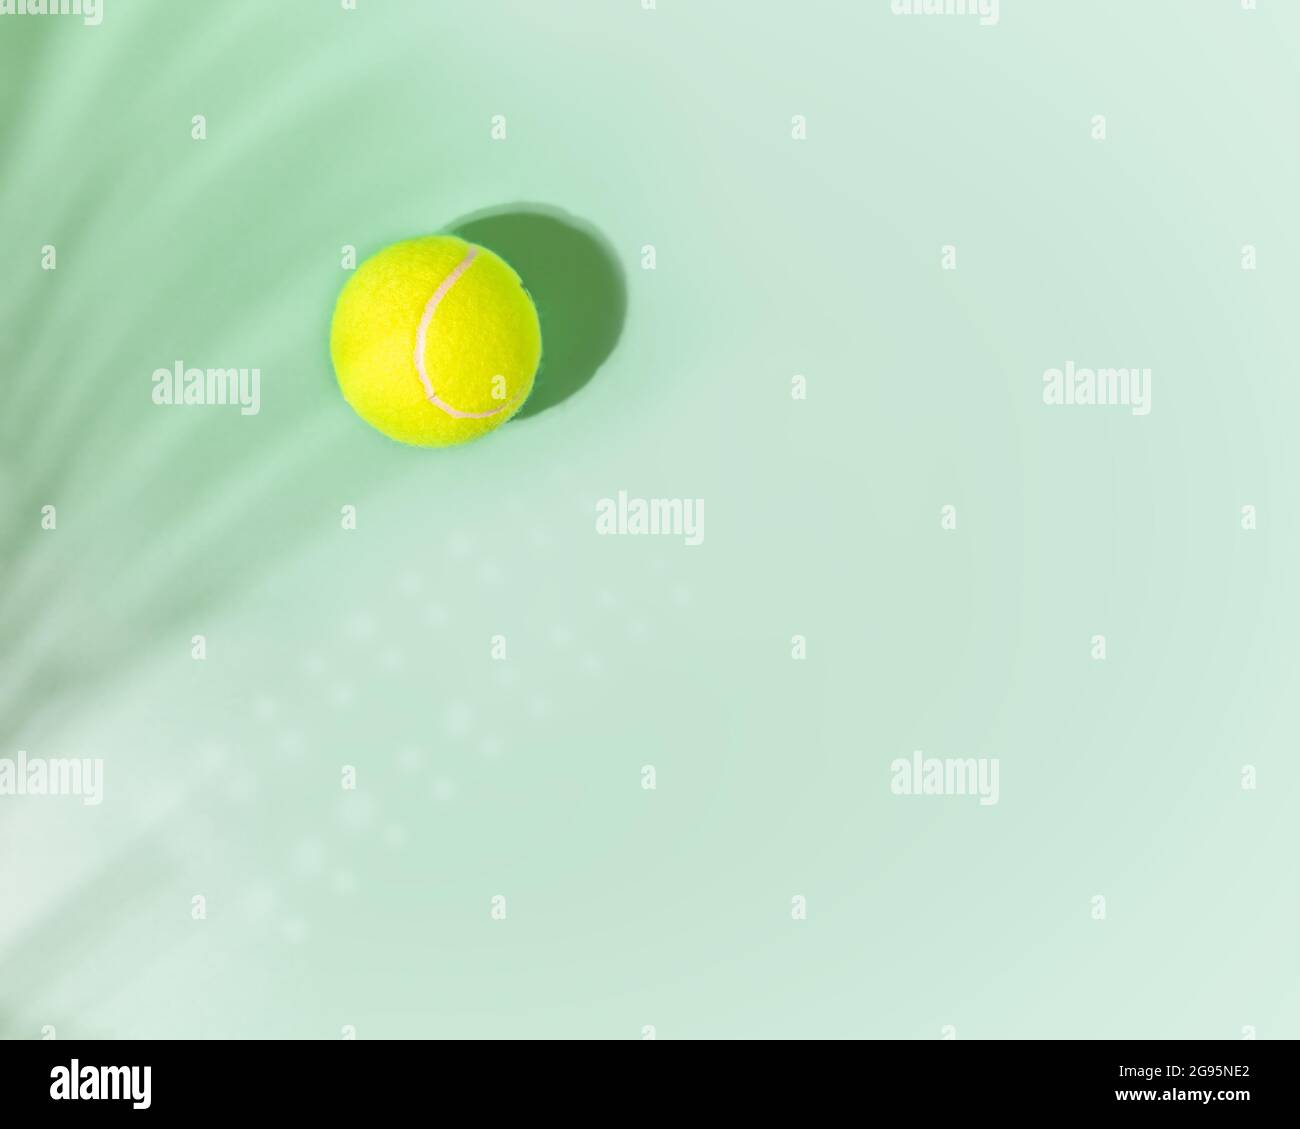 Tennis. Sport, composizione orizzontale con palla da tennis gialla e palma lasciano ombra su sfondo menta con posto per il testo. Disposizione piatta Foto Stock